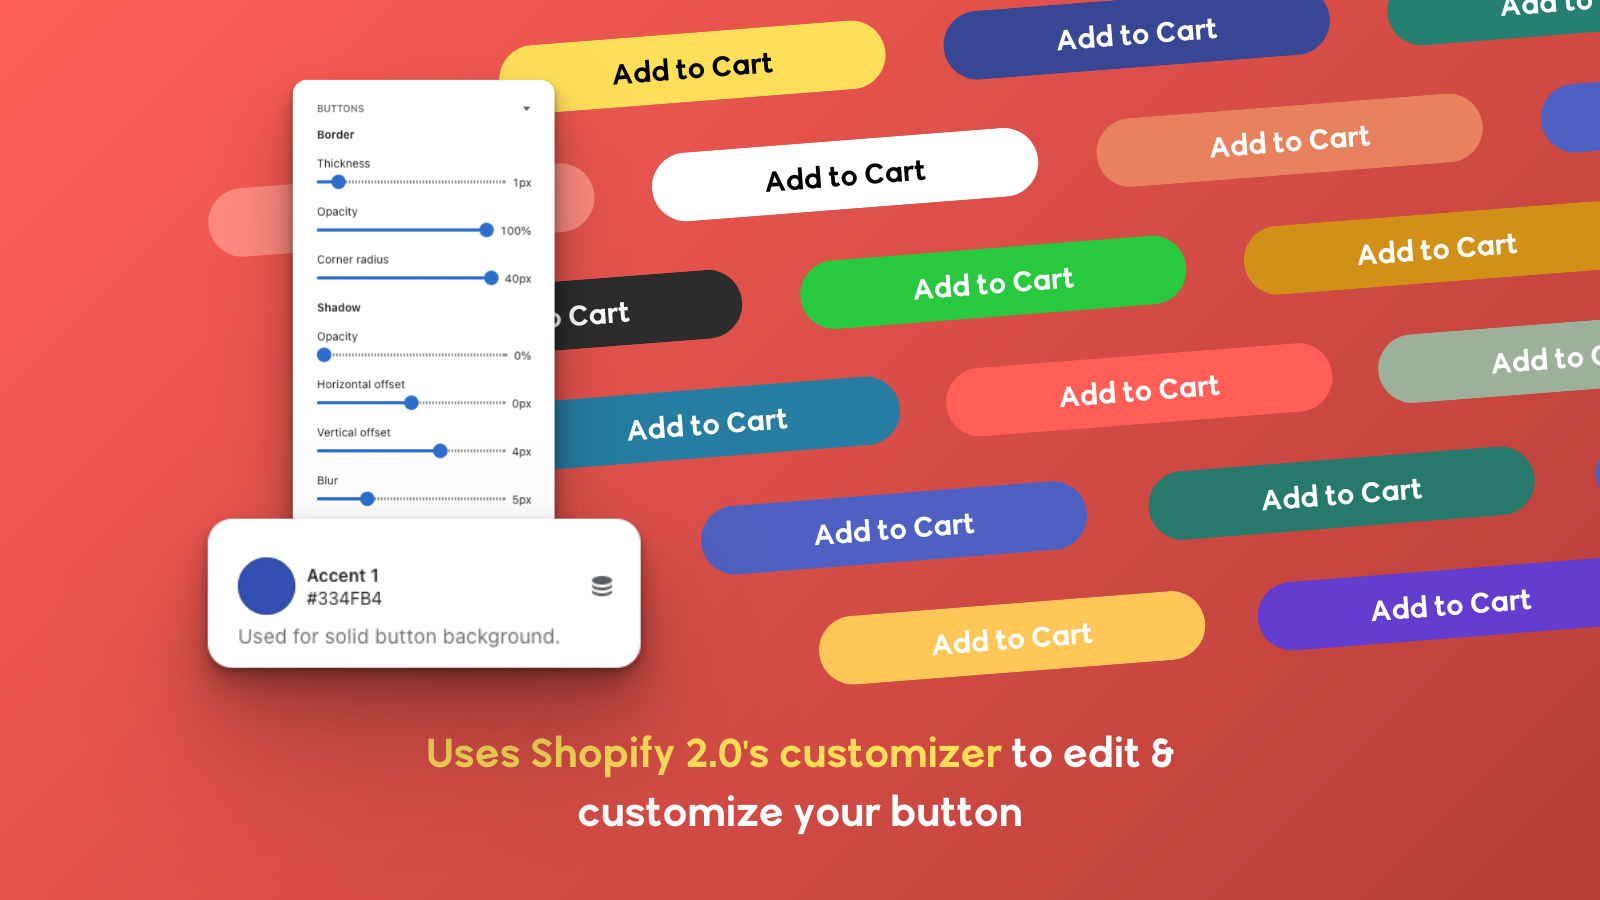 Utiliza o personalizador 2.0 da Shopify para editar e personalizar o botão ATC